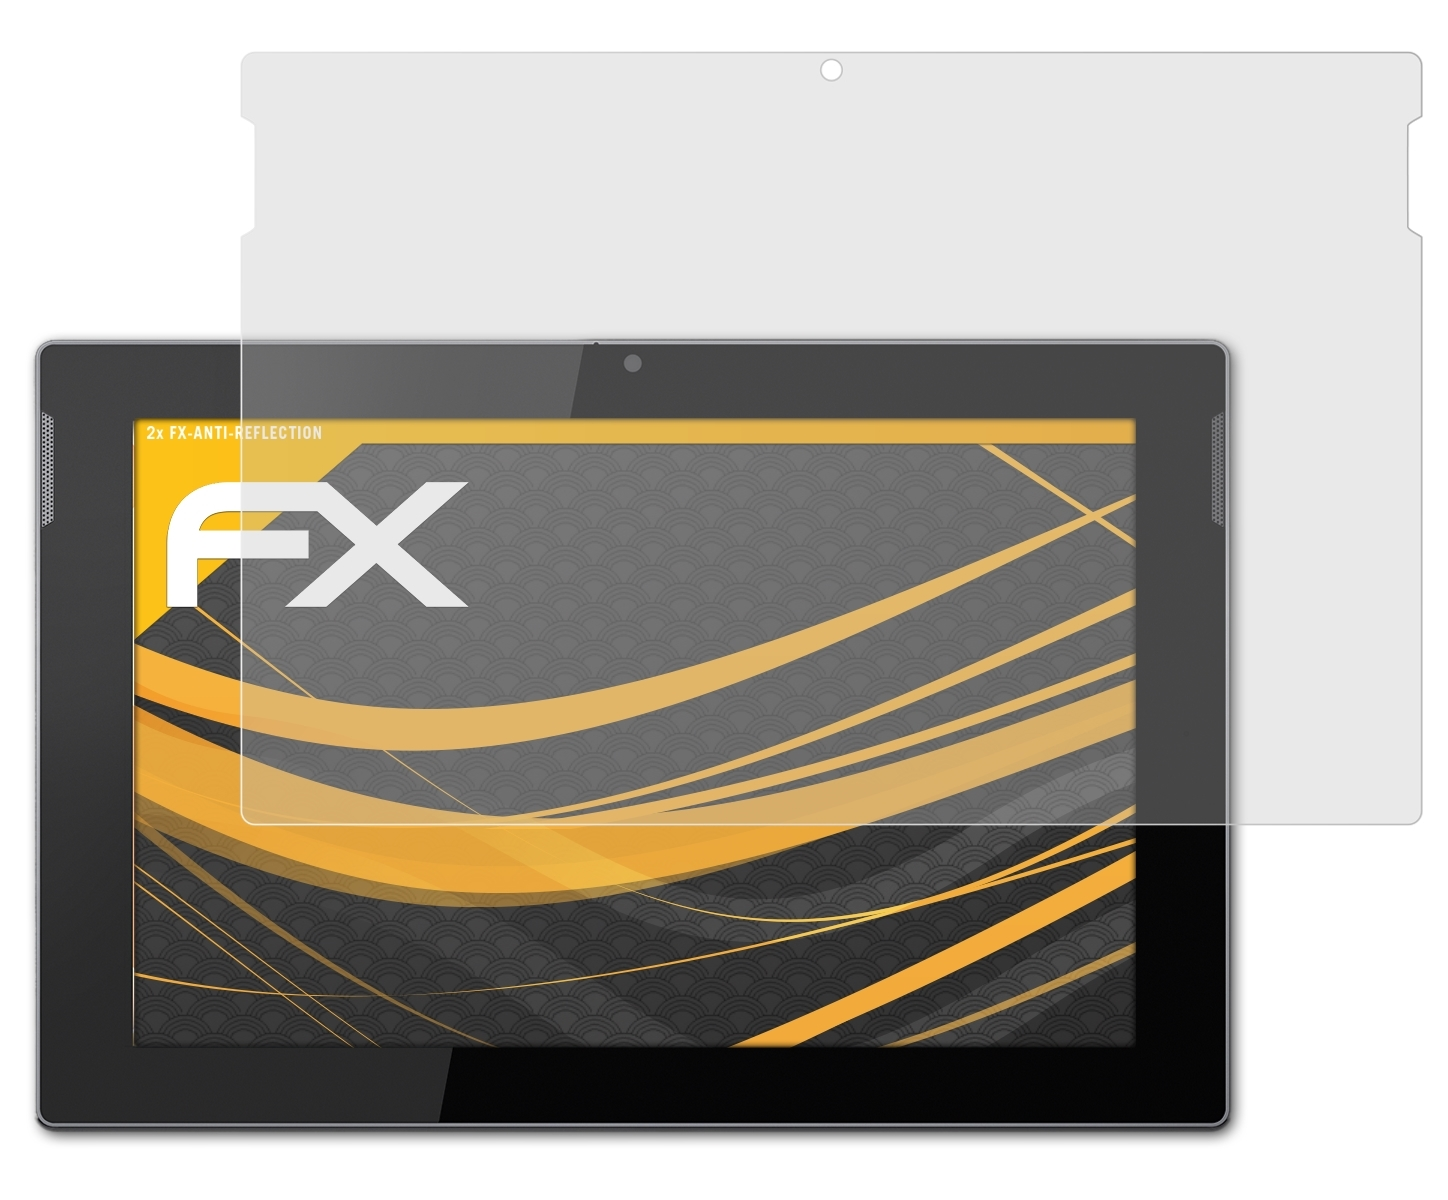 ATFOLIX 2x FX-Antireflex Displayschutz(für Medion LIFETAB S10333 (MD98828))